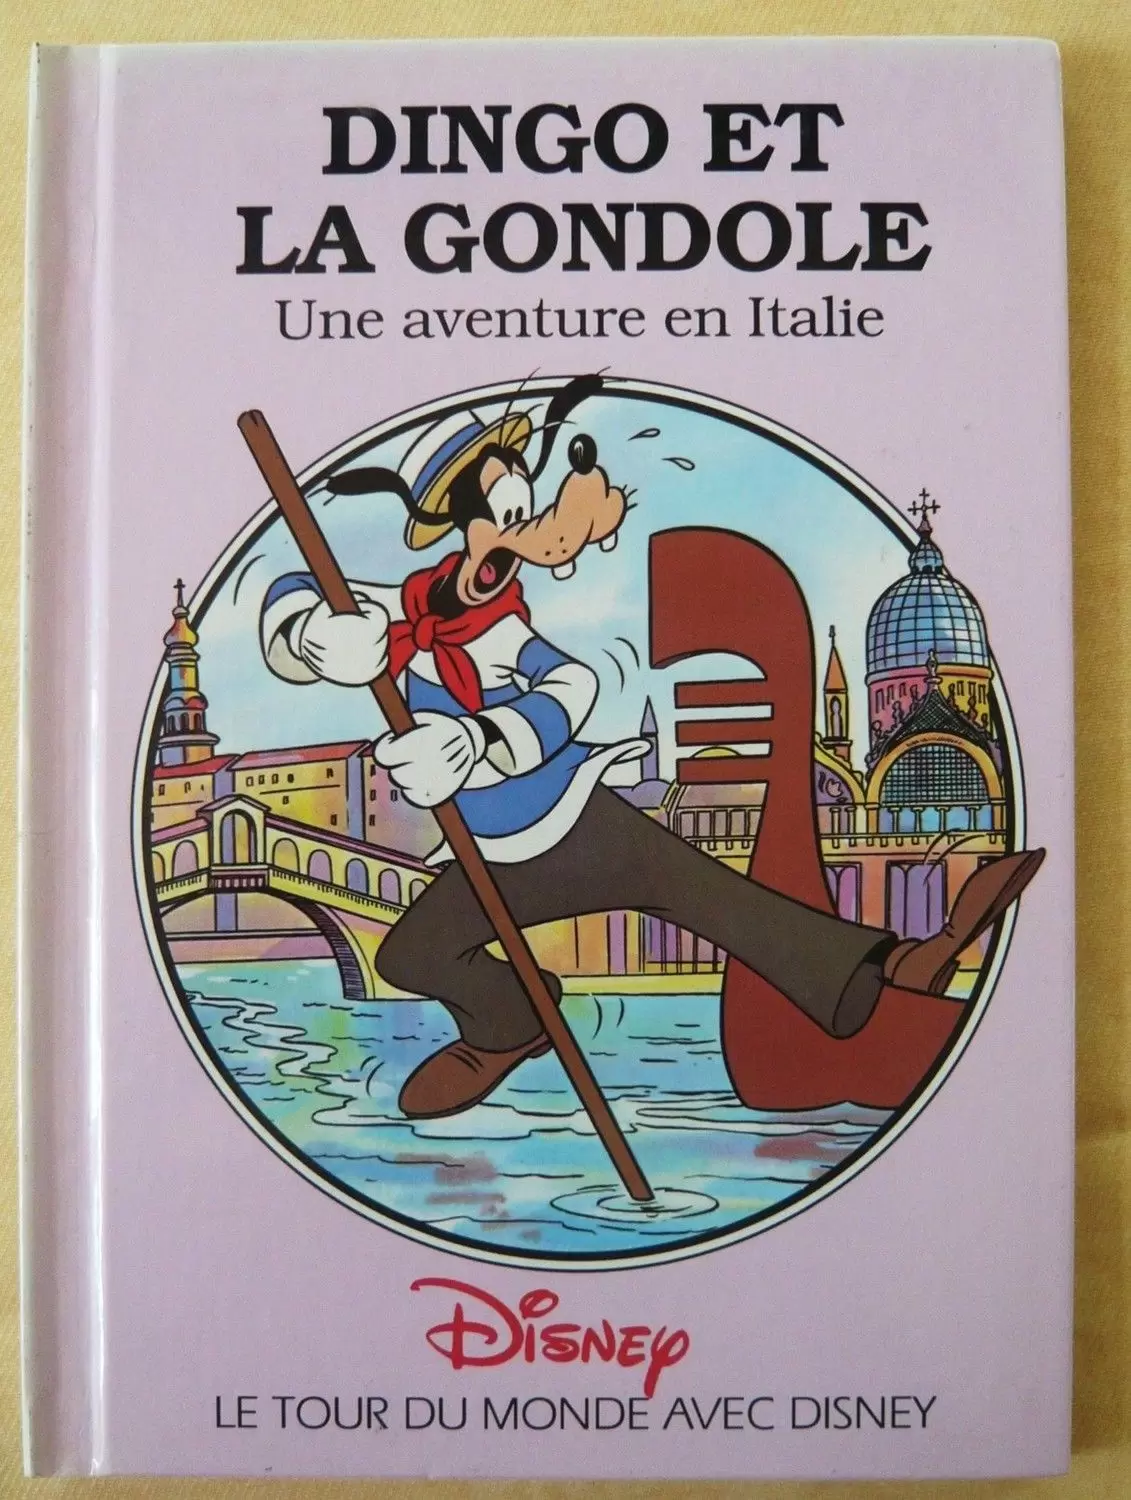 Le tour du monde avec Disney - Dingo et la gondole - Une aventure en Italie